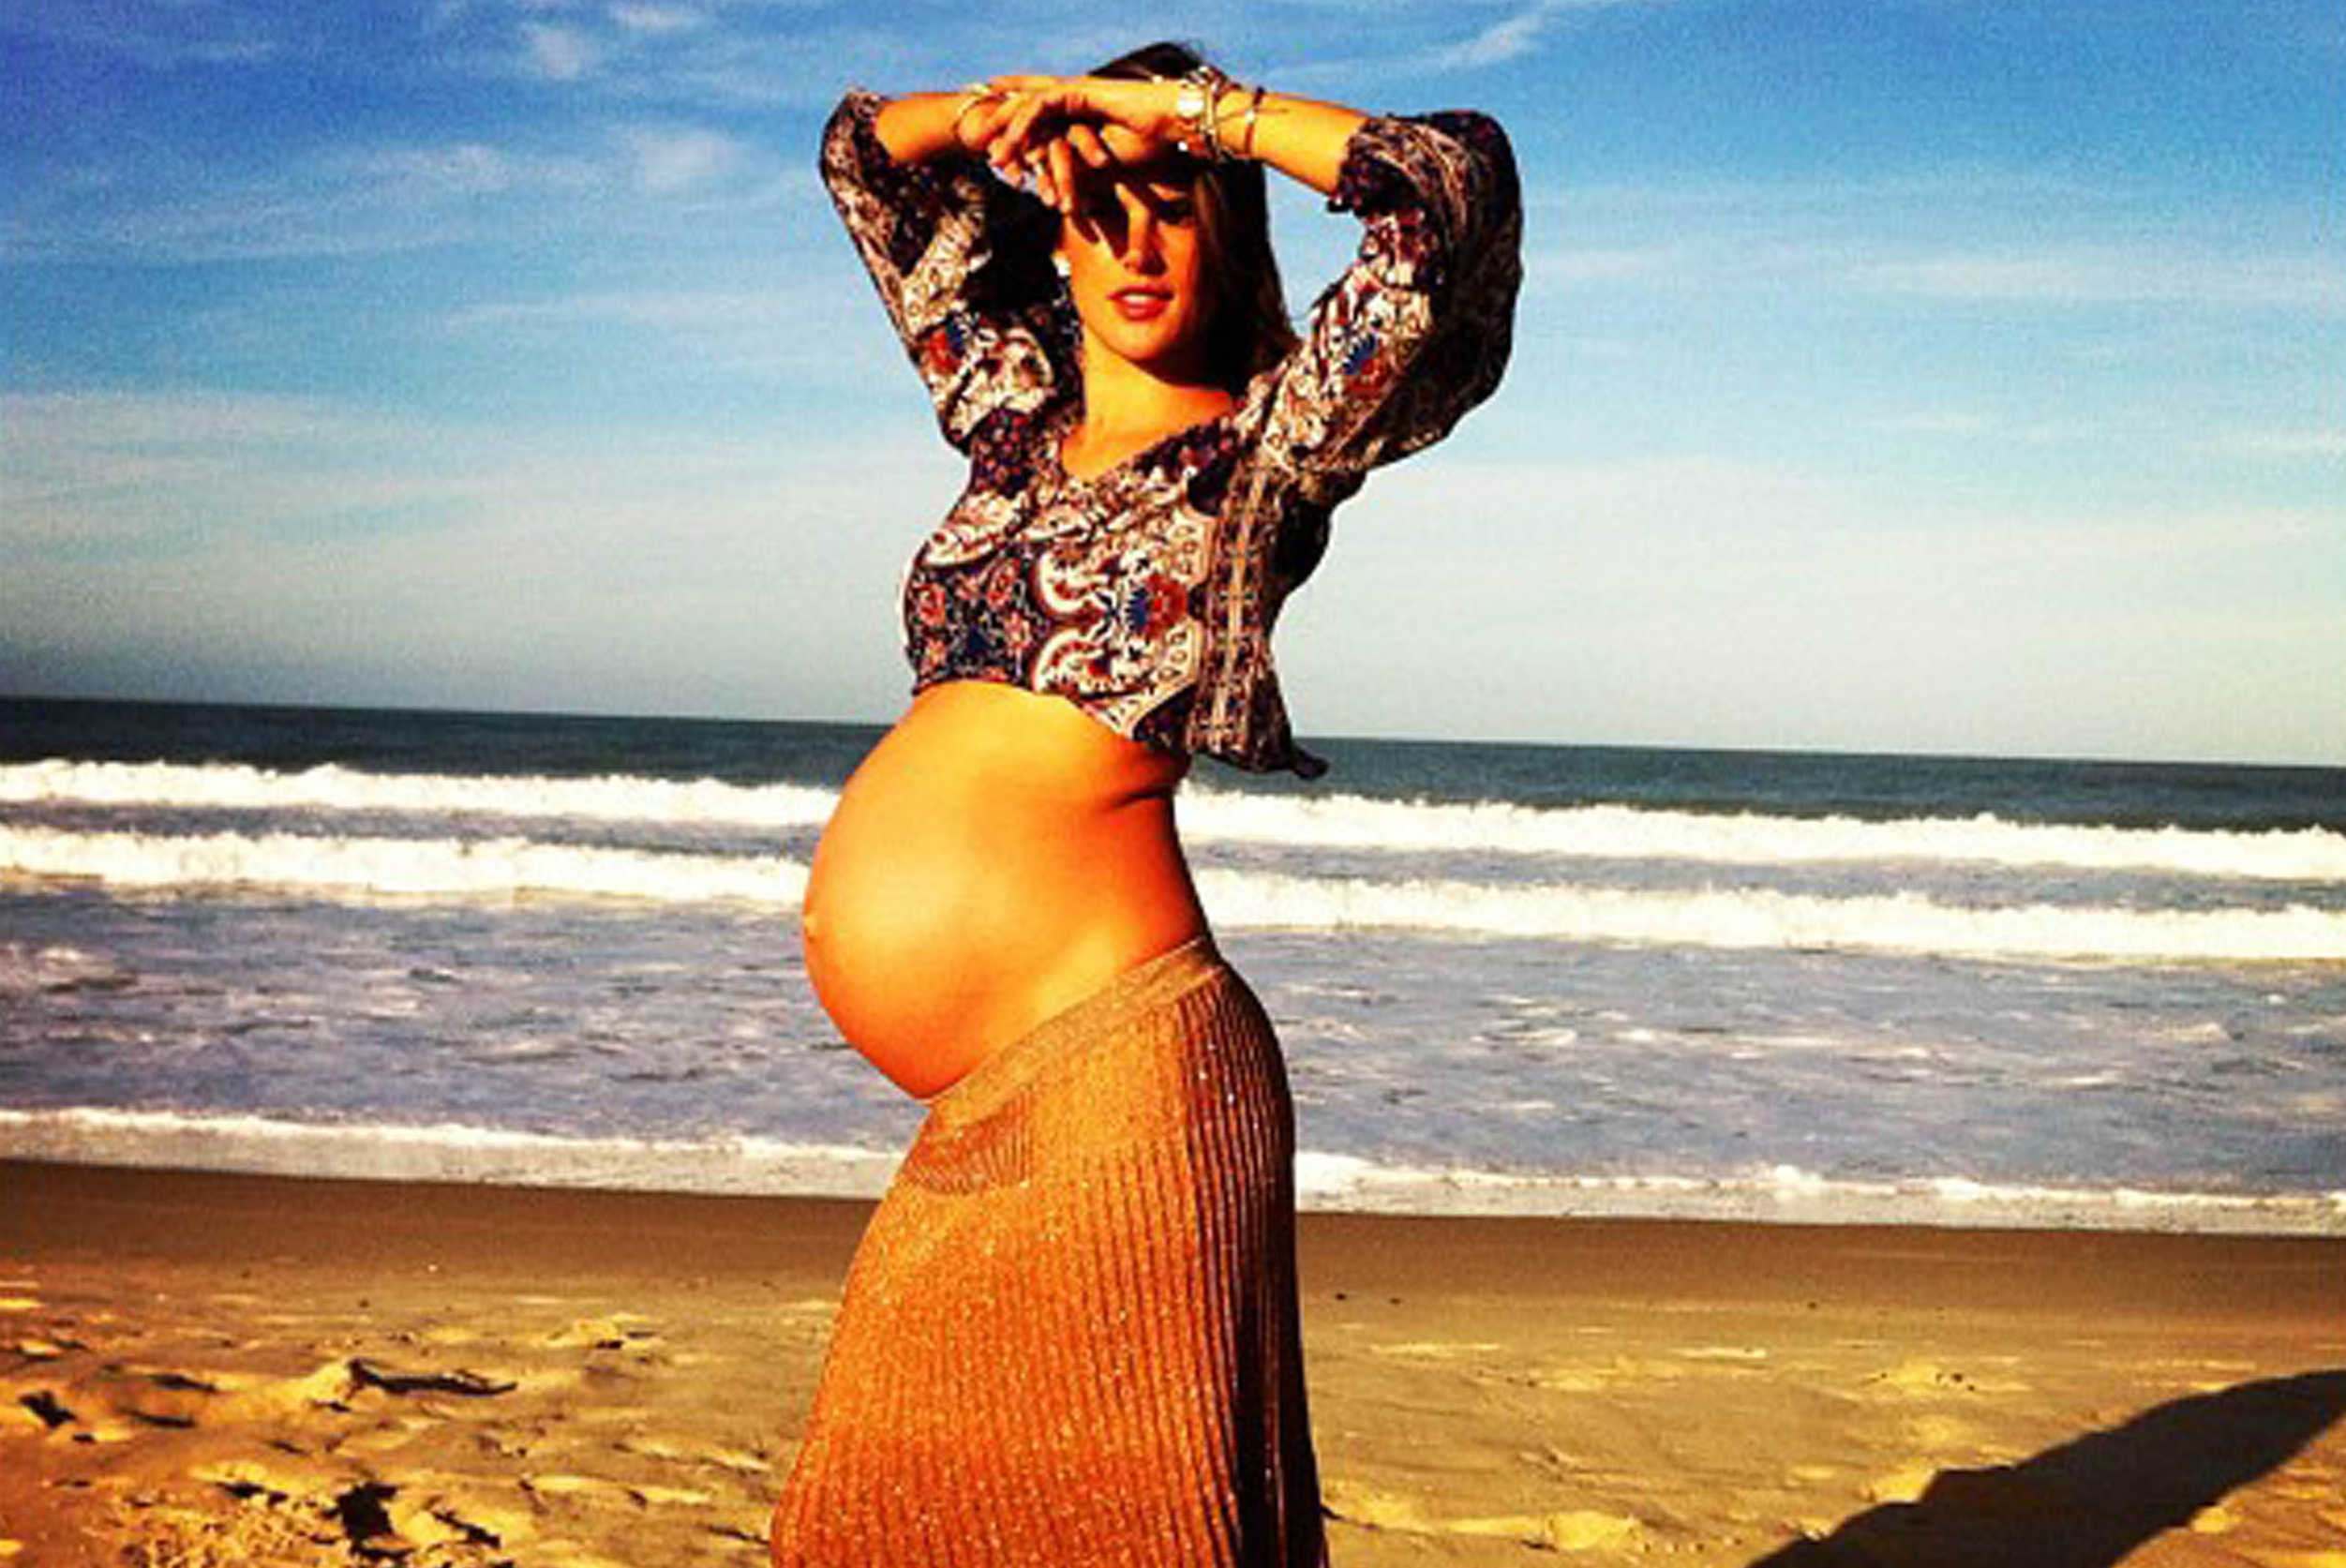 Vackra Alessandra Ambrosio födde i veckan sitt andra barn - och så här stor var magen strax innan.